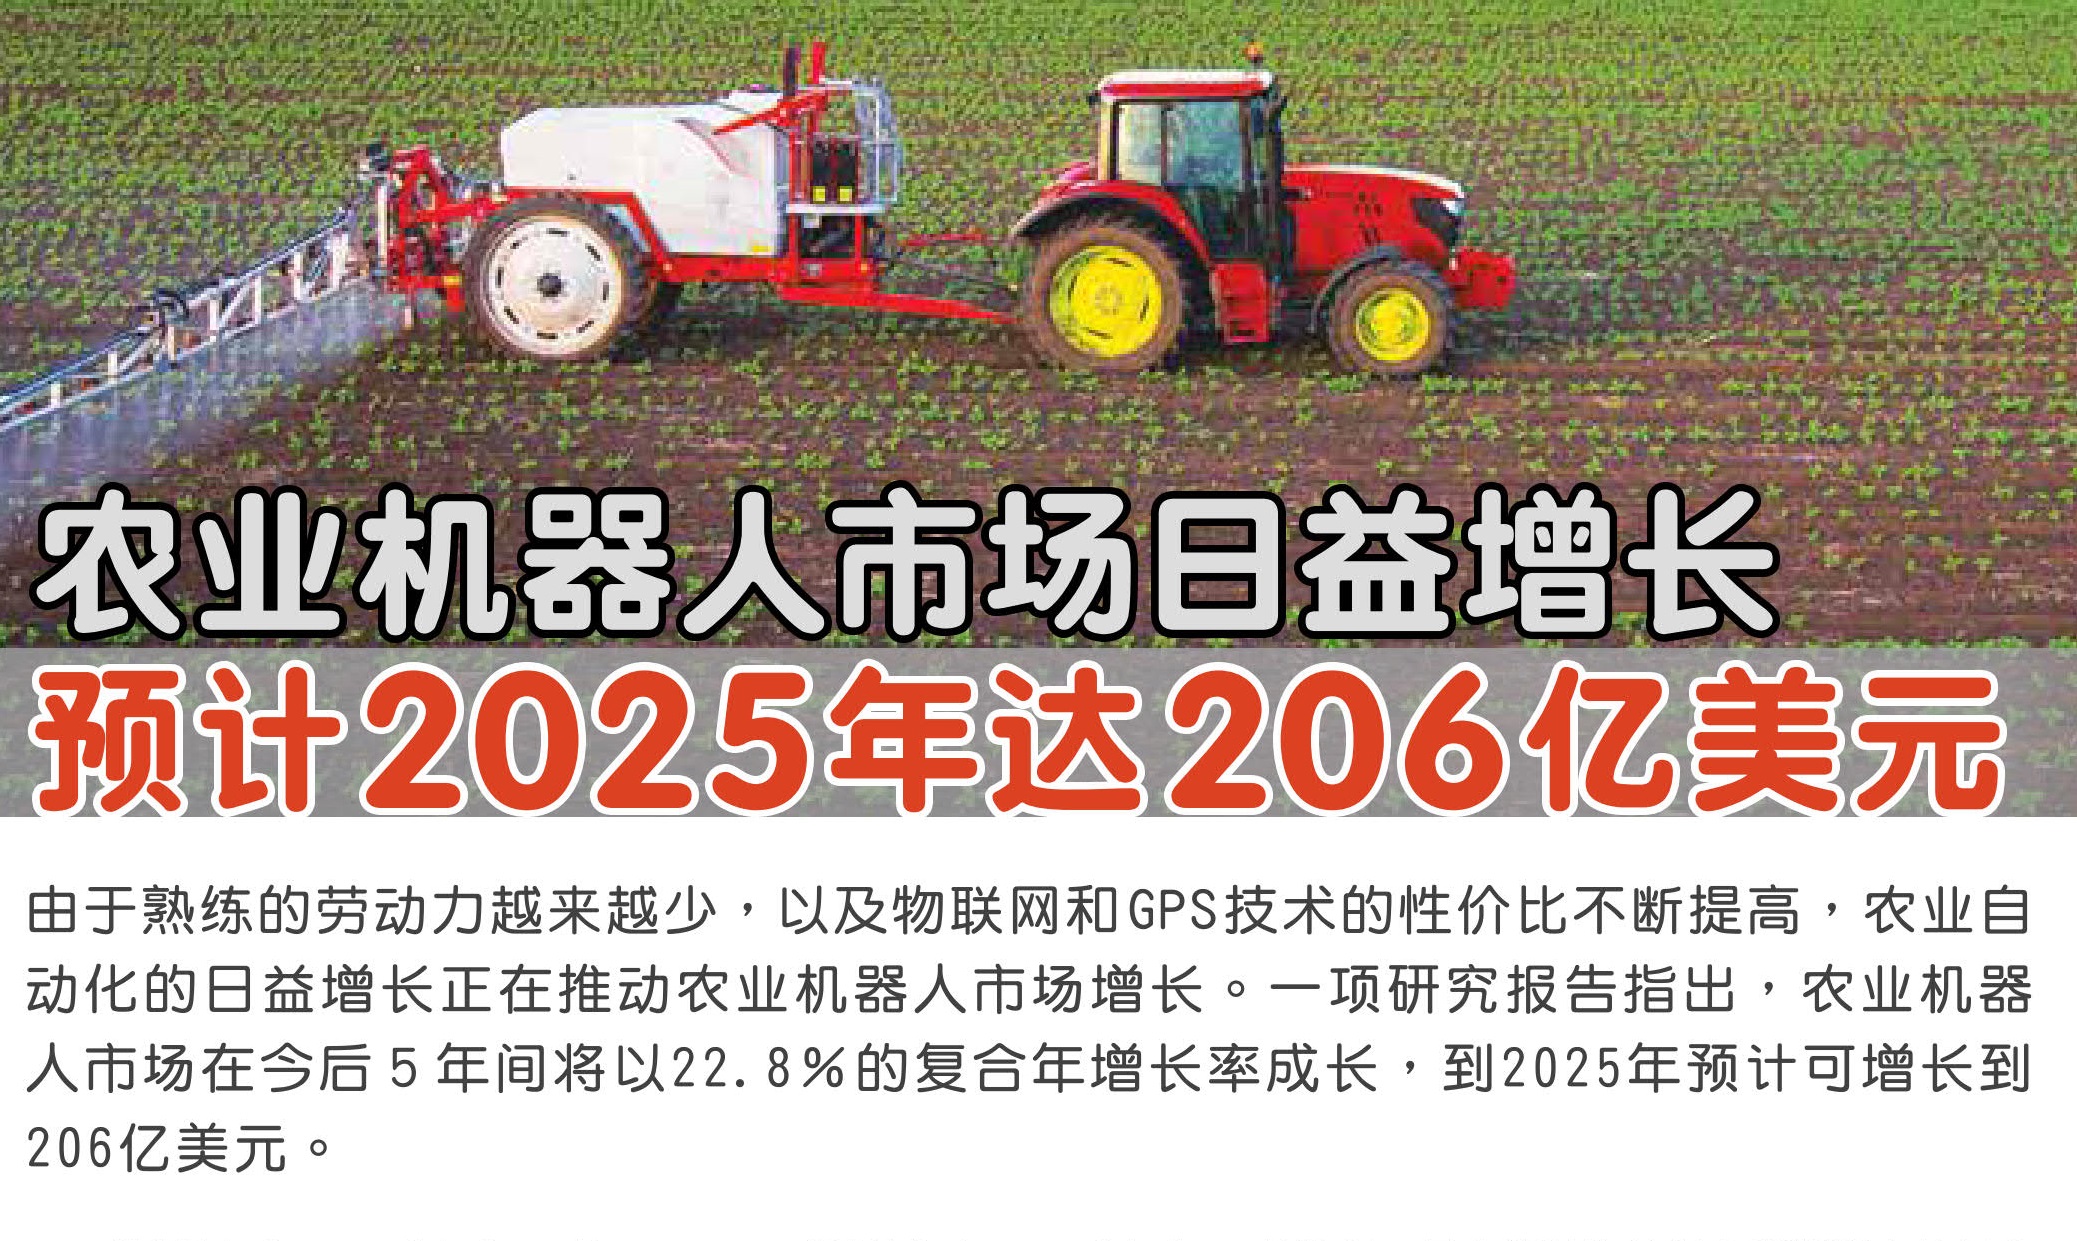 农业机器人市场日益增长 预计2025年达206亿美元 - 农牧世界